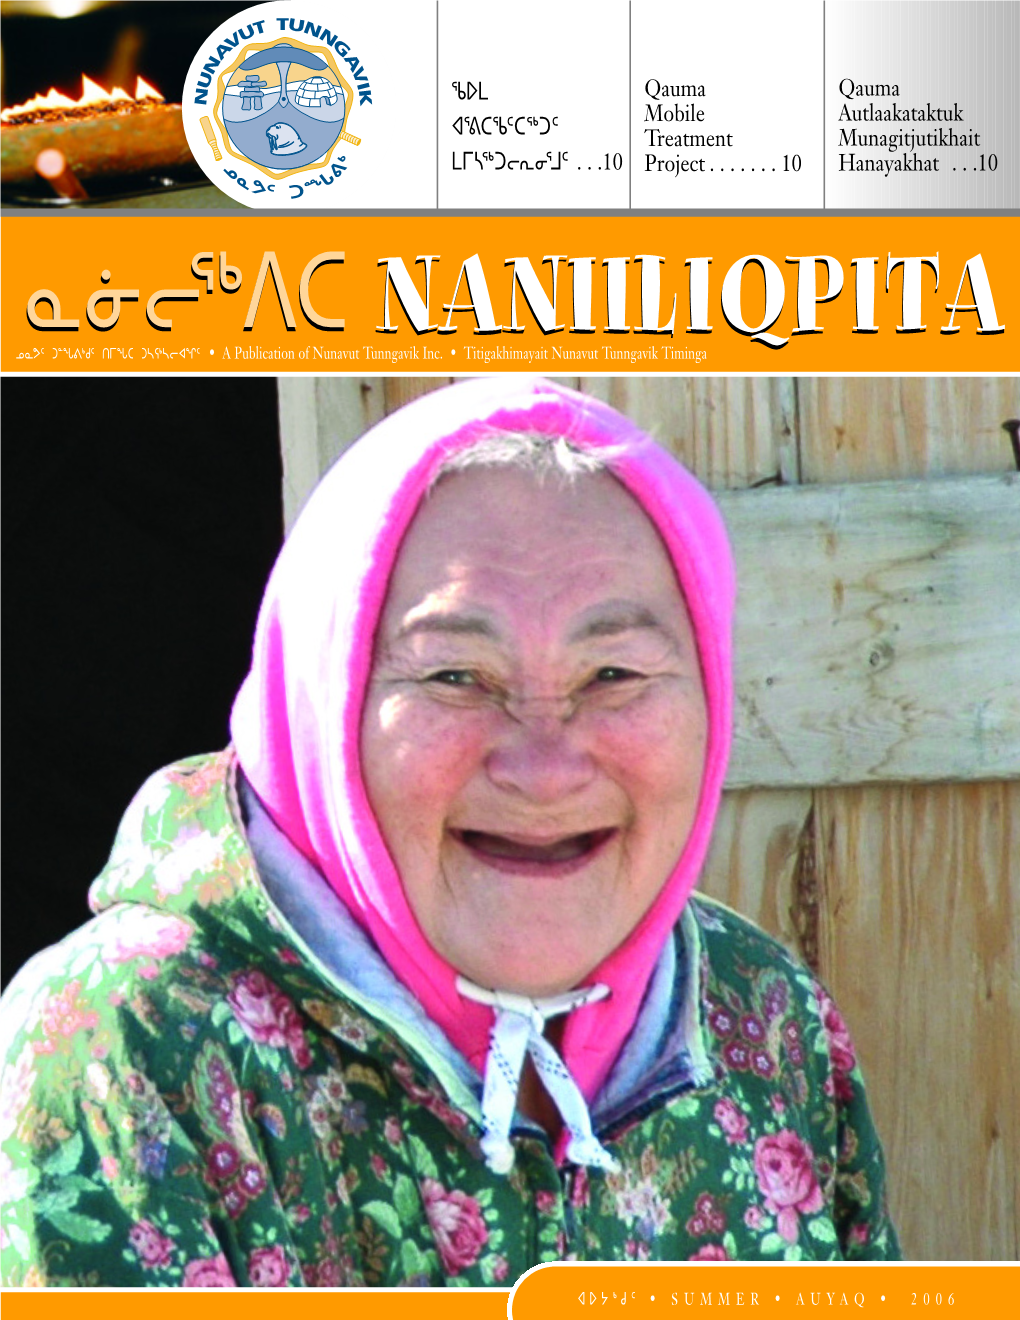 Naniiliqpita Magazine